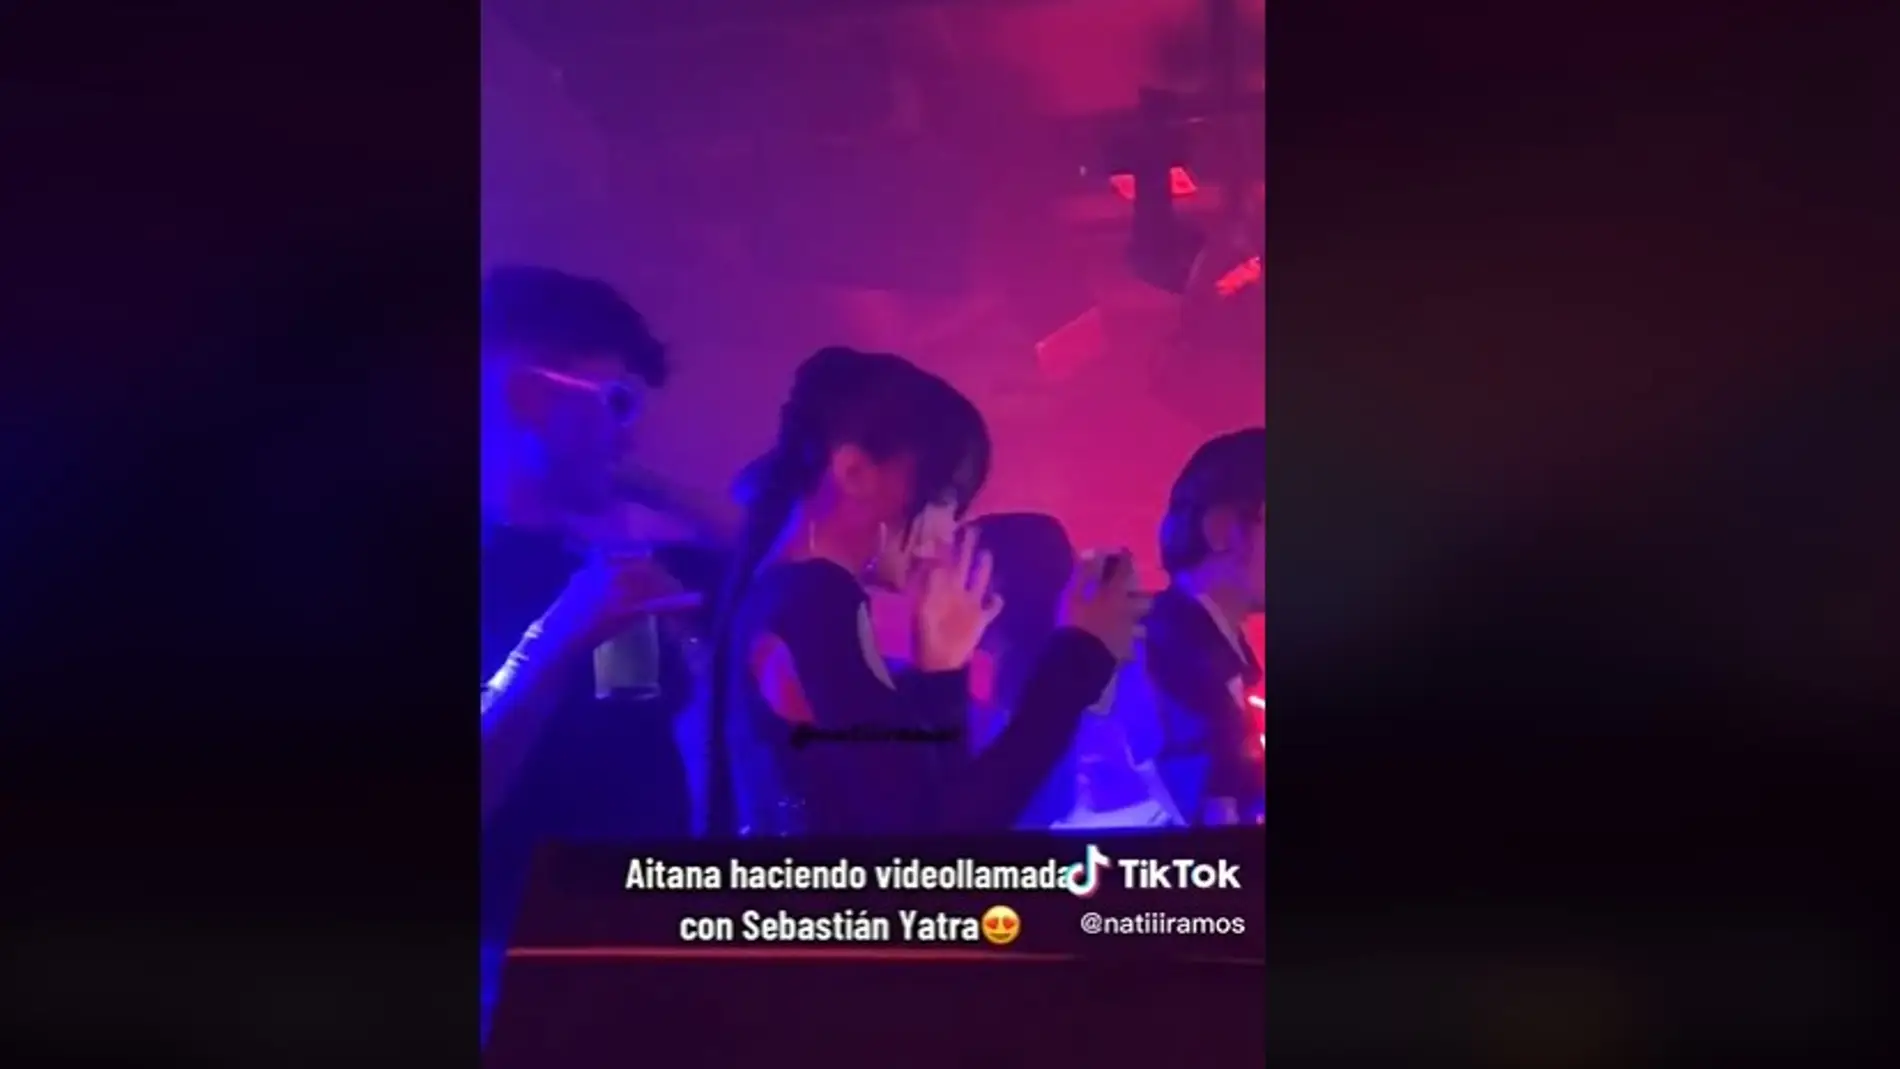 El gesto de Aitana en la videollamada de la sesión Alpha House 